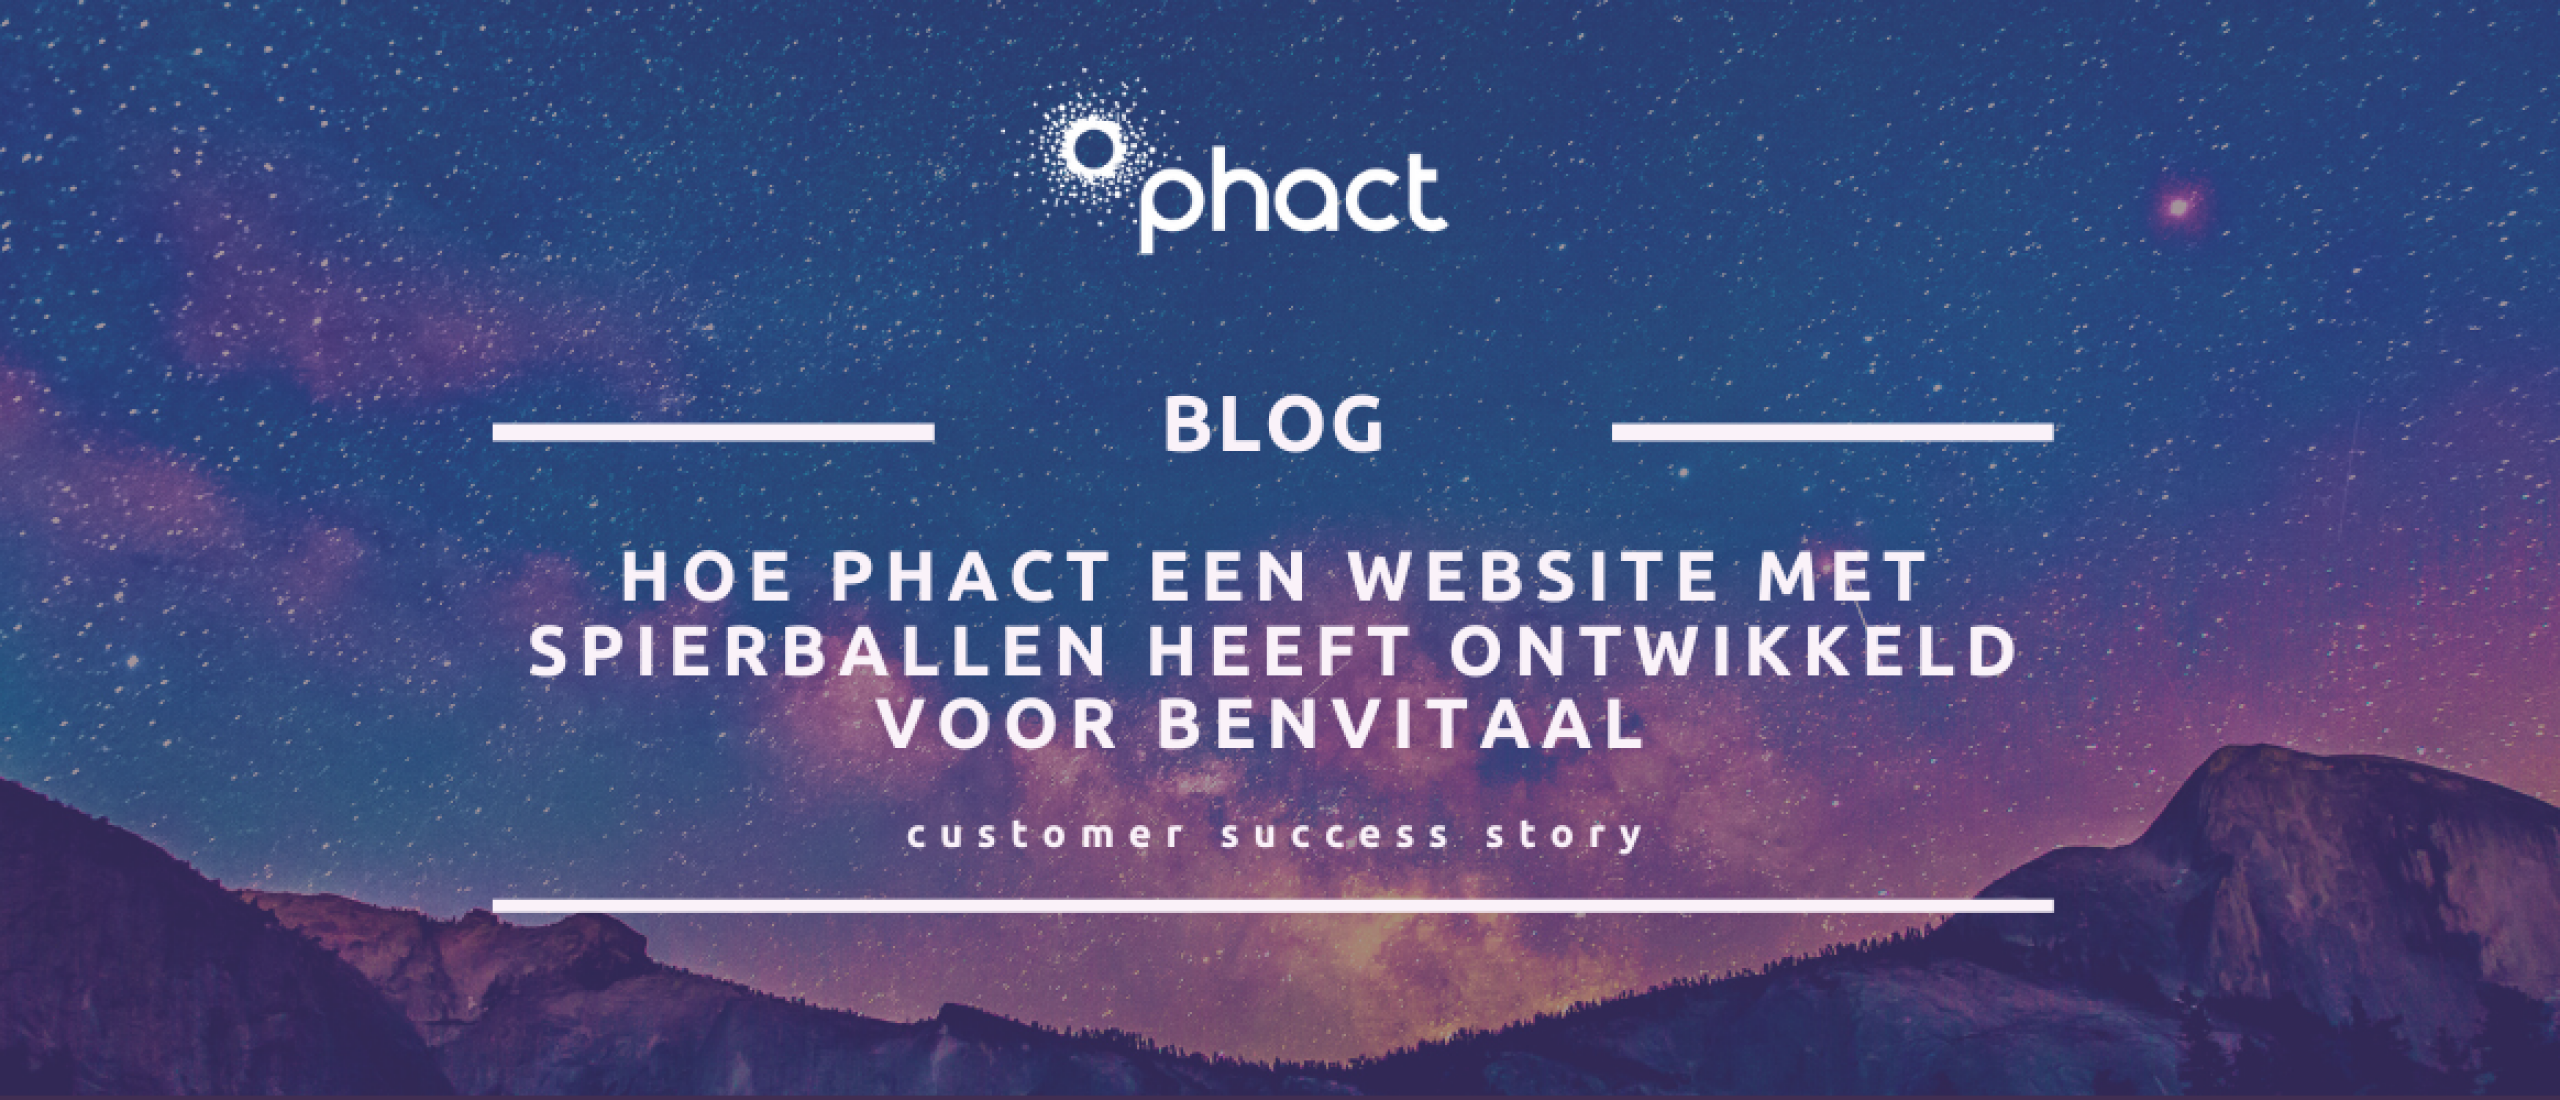 Hoe Phact een website met spierballen heeft ontwikkeld voor benVitaal